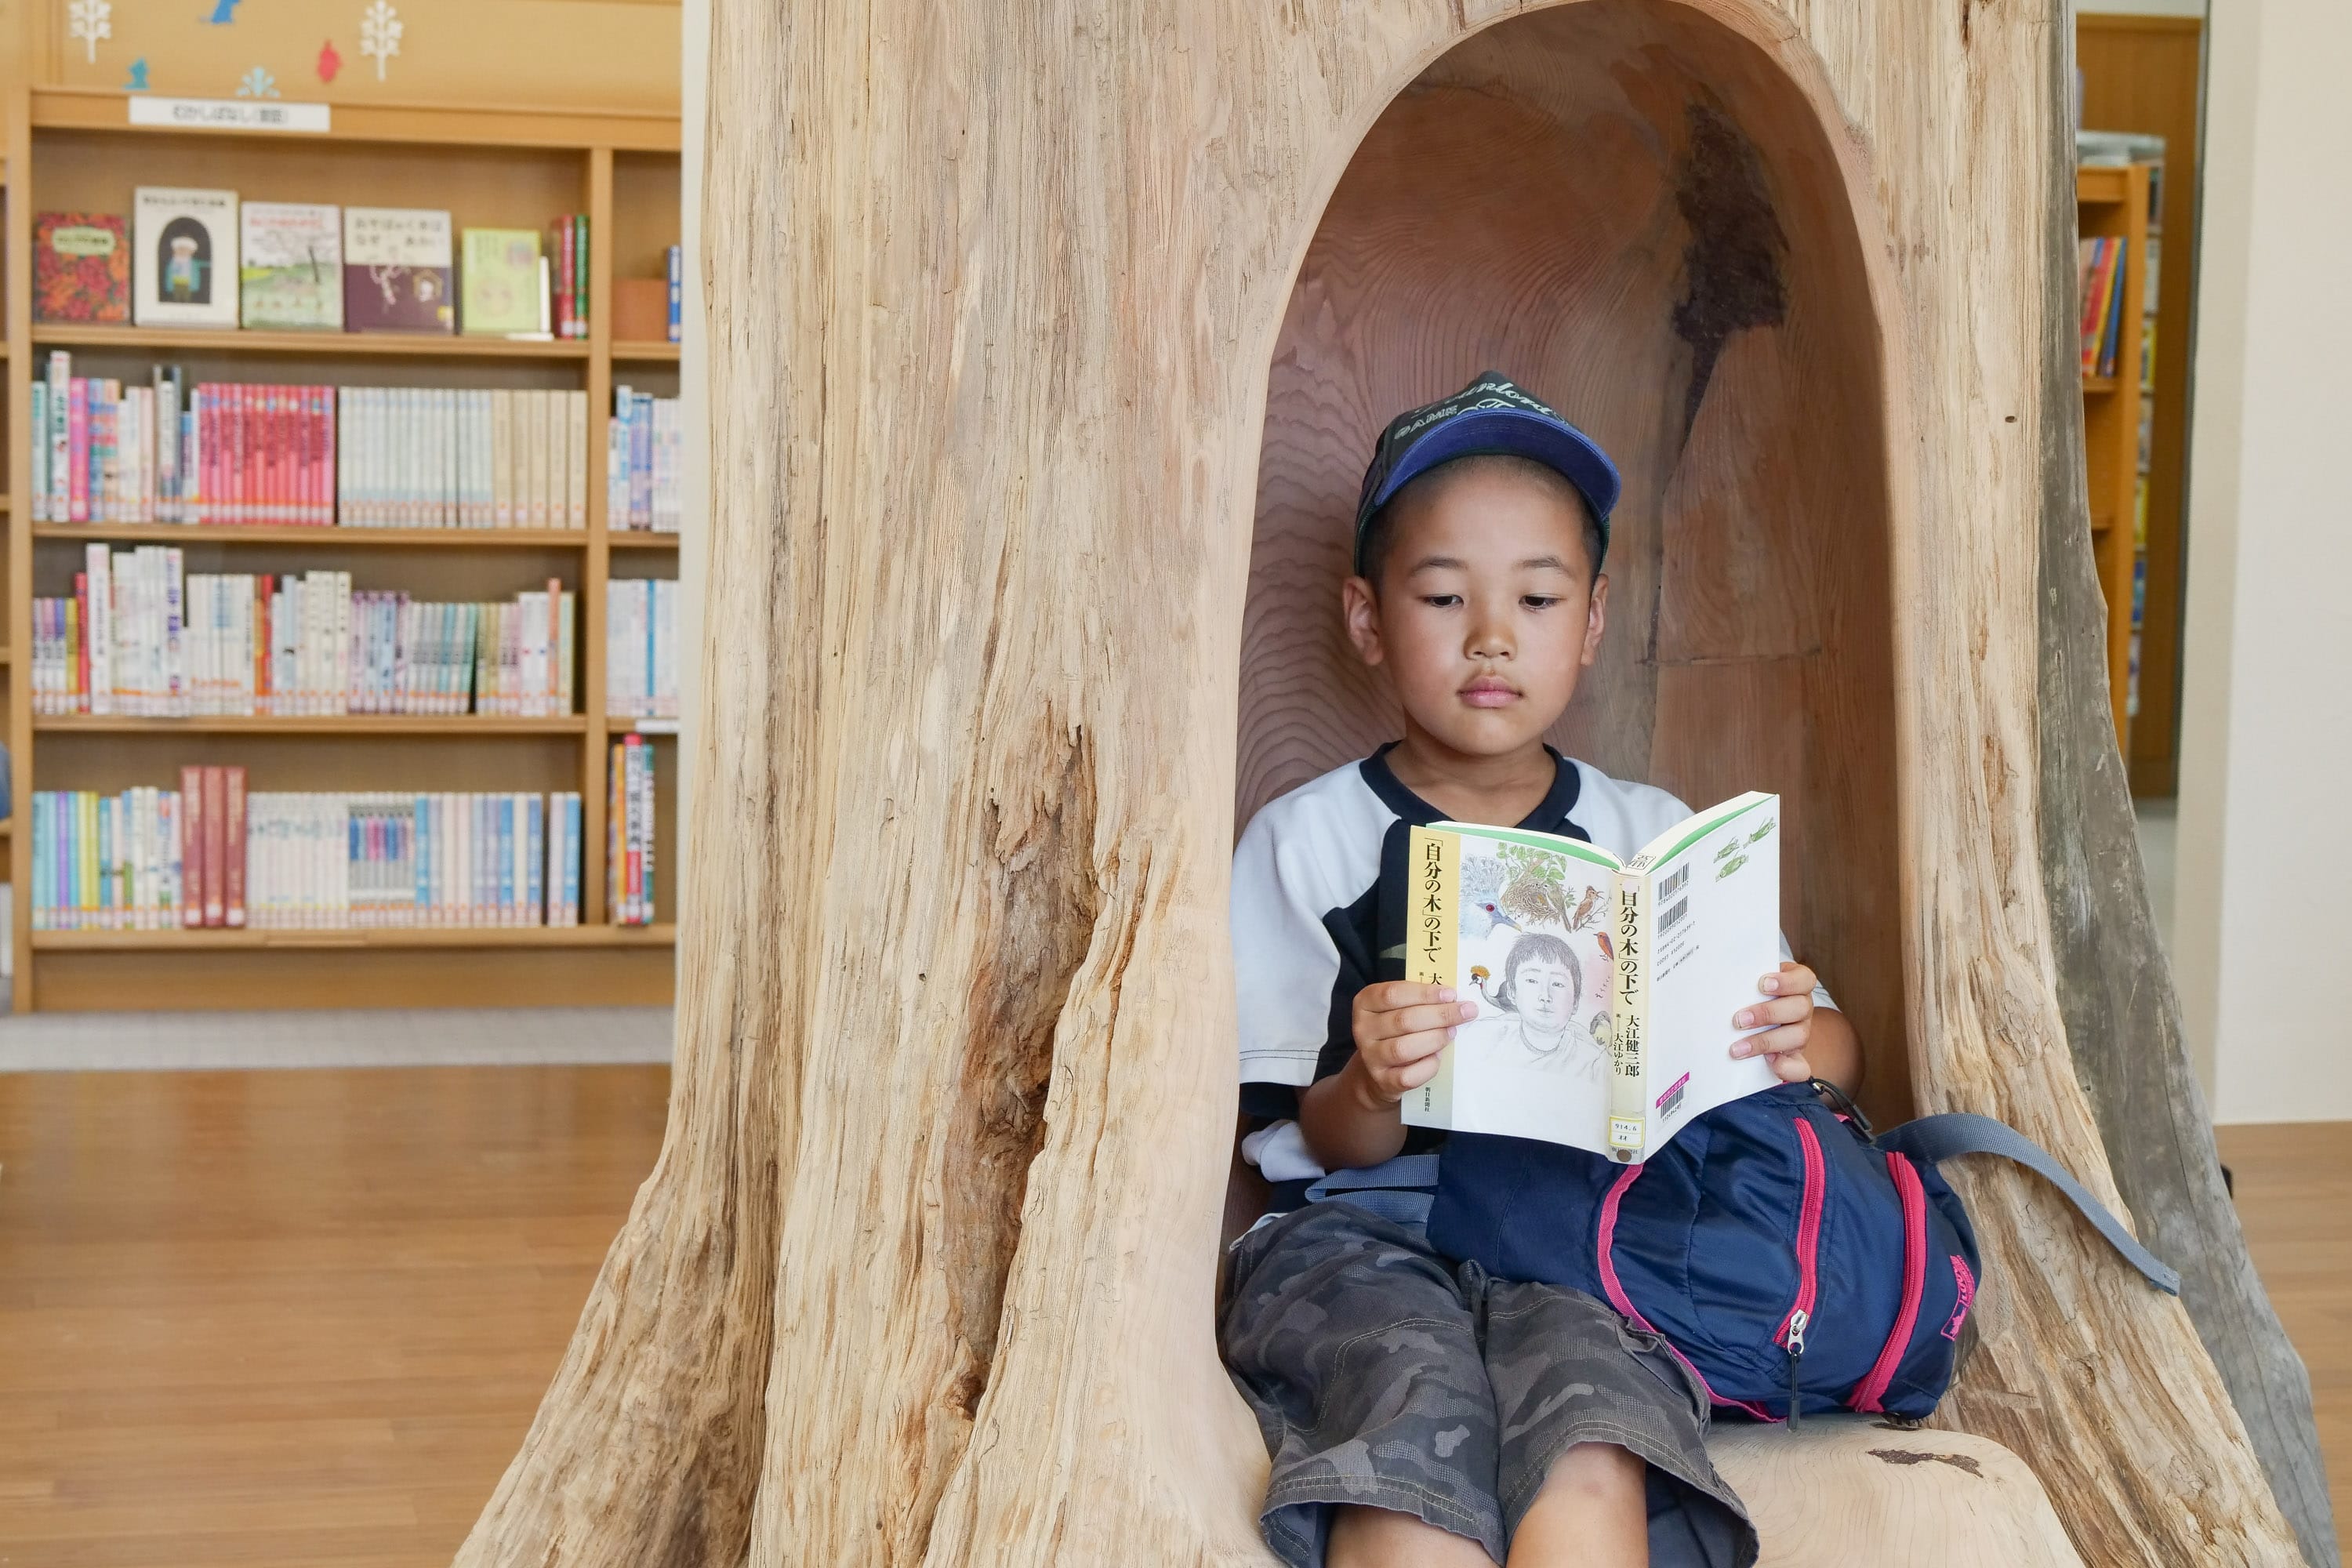 木工作家の吉川和人さんが制作した、樹齢300年の木を使った彫刻作品「自分の木」。ふらっとやってきた近所に暮らす少年が木の中で読んでいたのは、吉川さんが作品の着想を得たという、大江健三郎さんのエッセイ「自分の木の下で」。